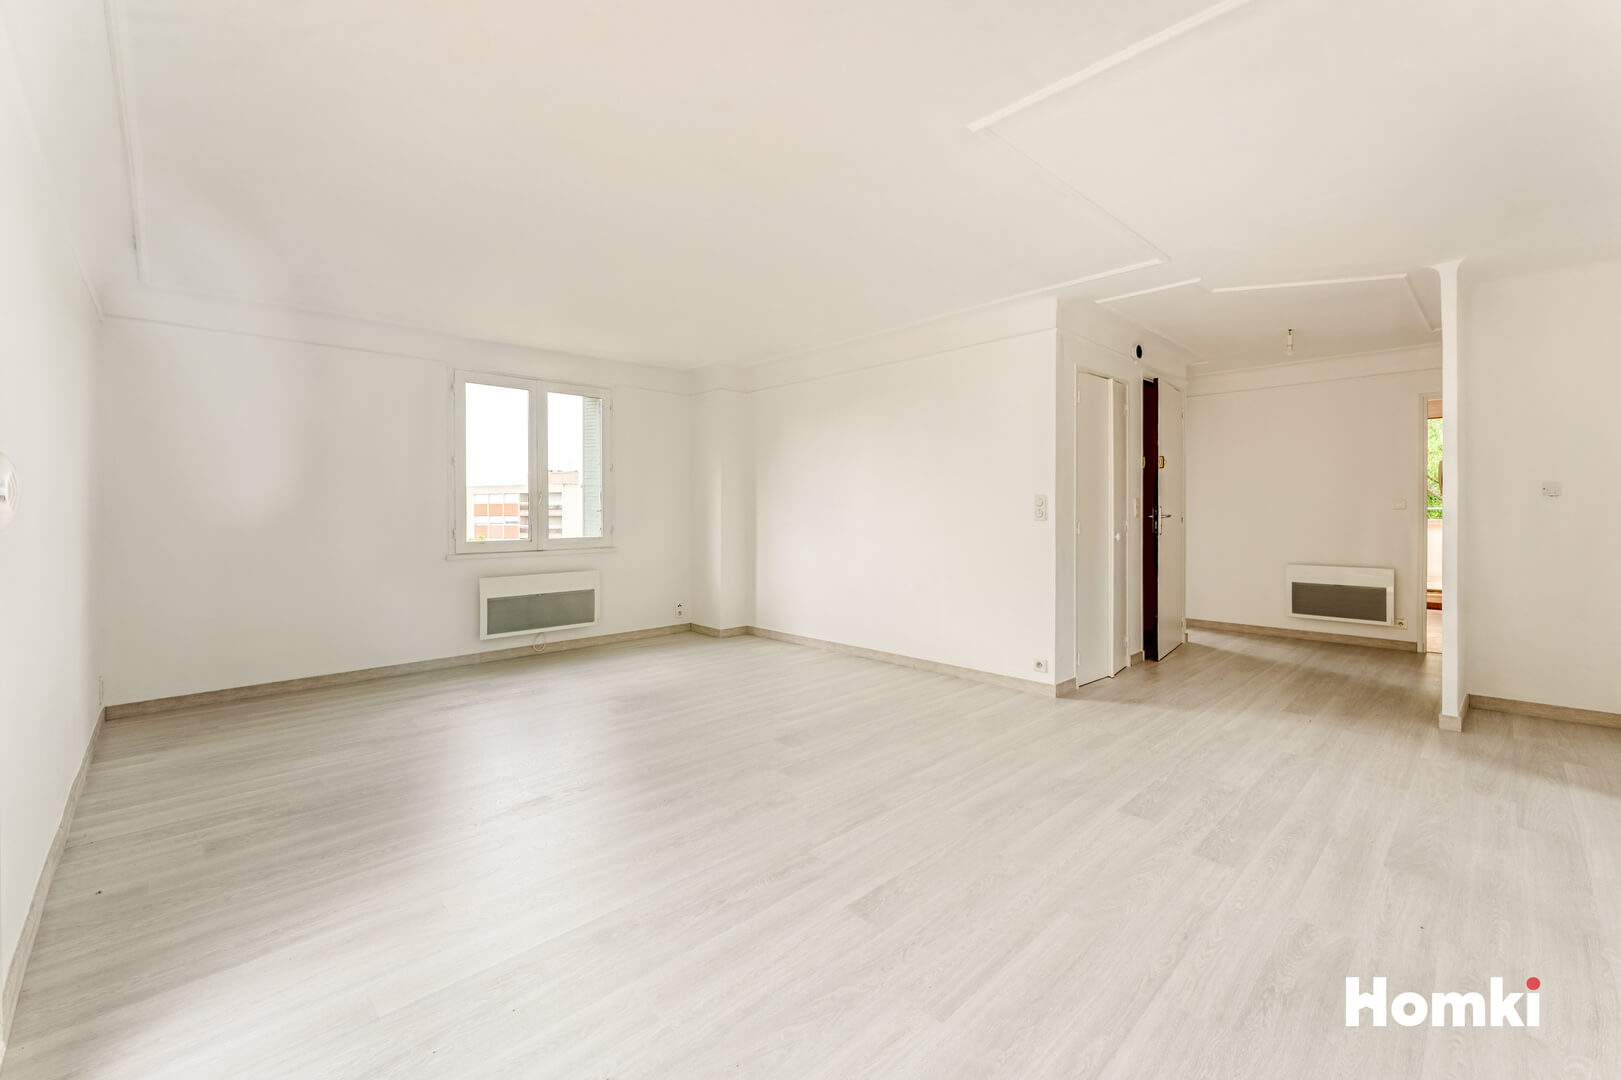 Homki - Vente Appartement  de 71.0 m² à Aix-en-Provence 13100